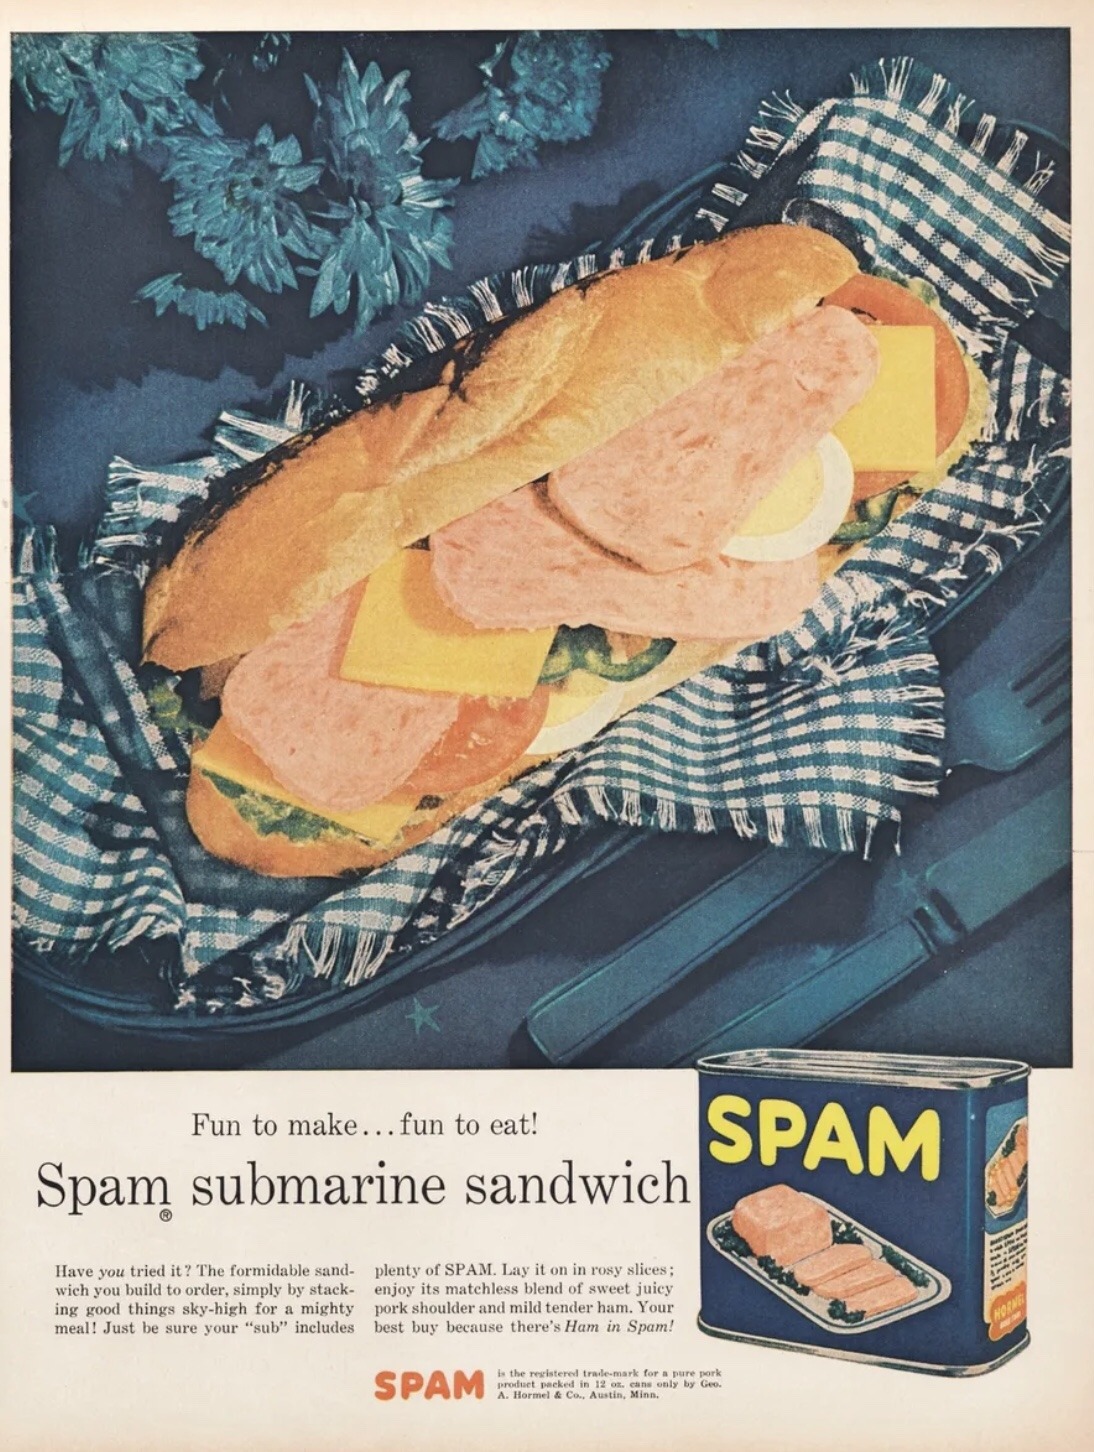 Spam submarine sandwich